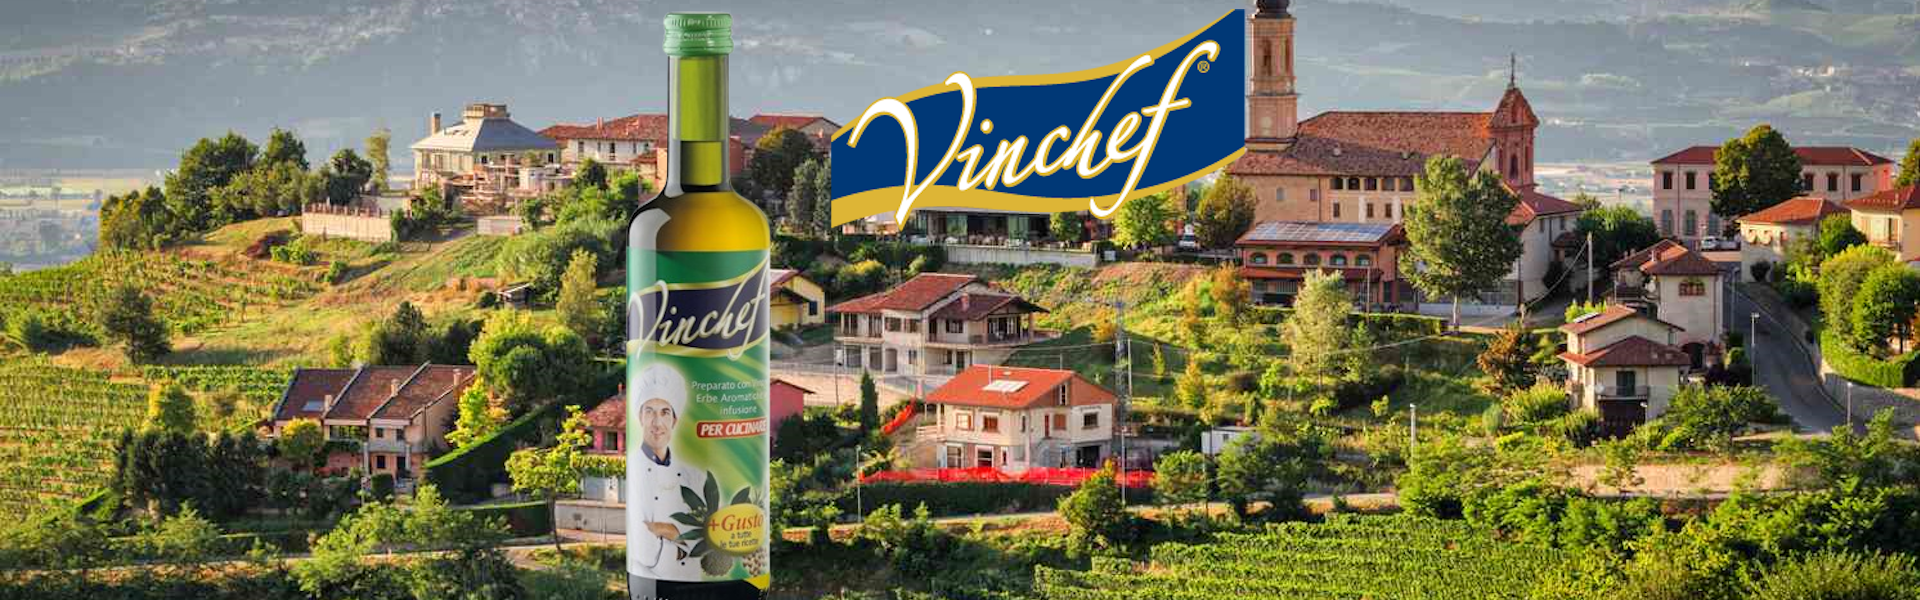 Vinchef – wino do gotowania